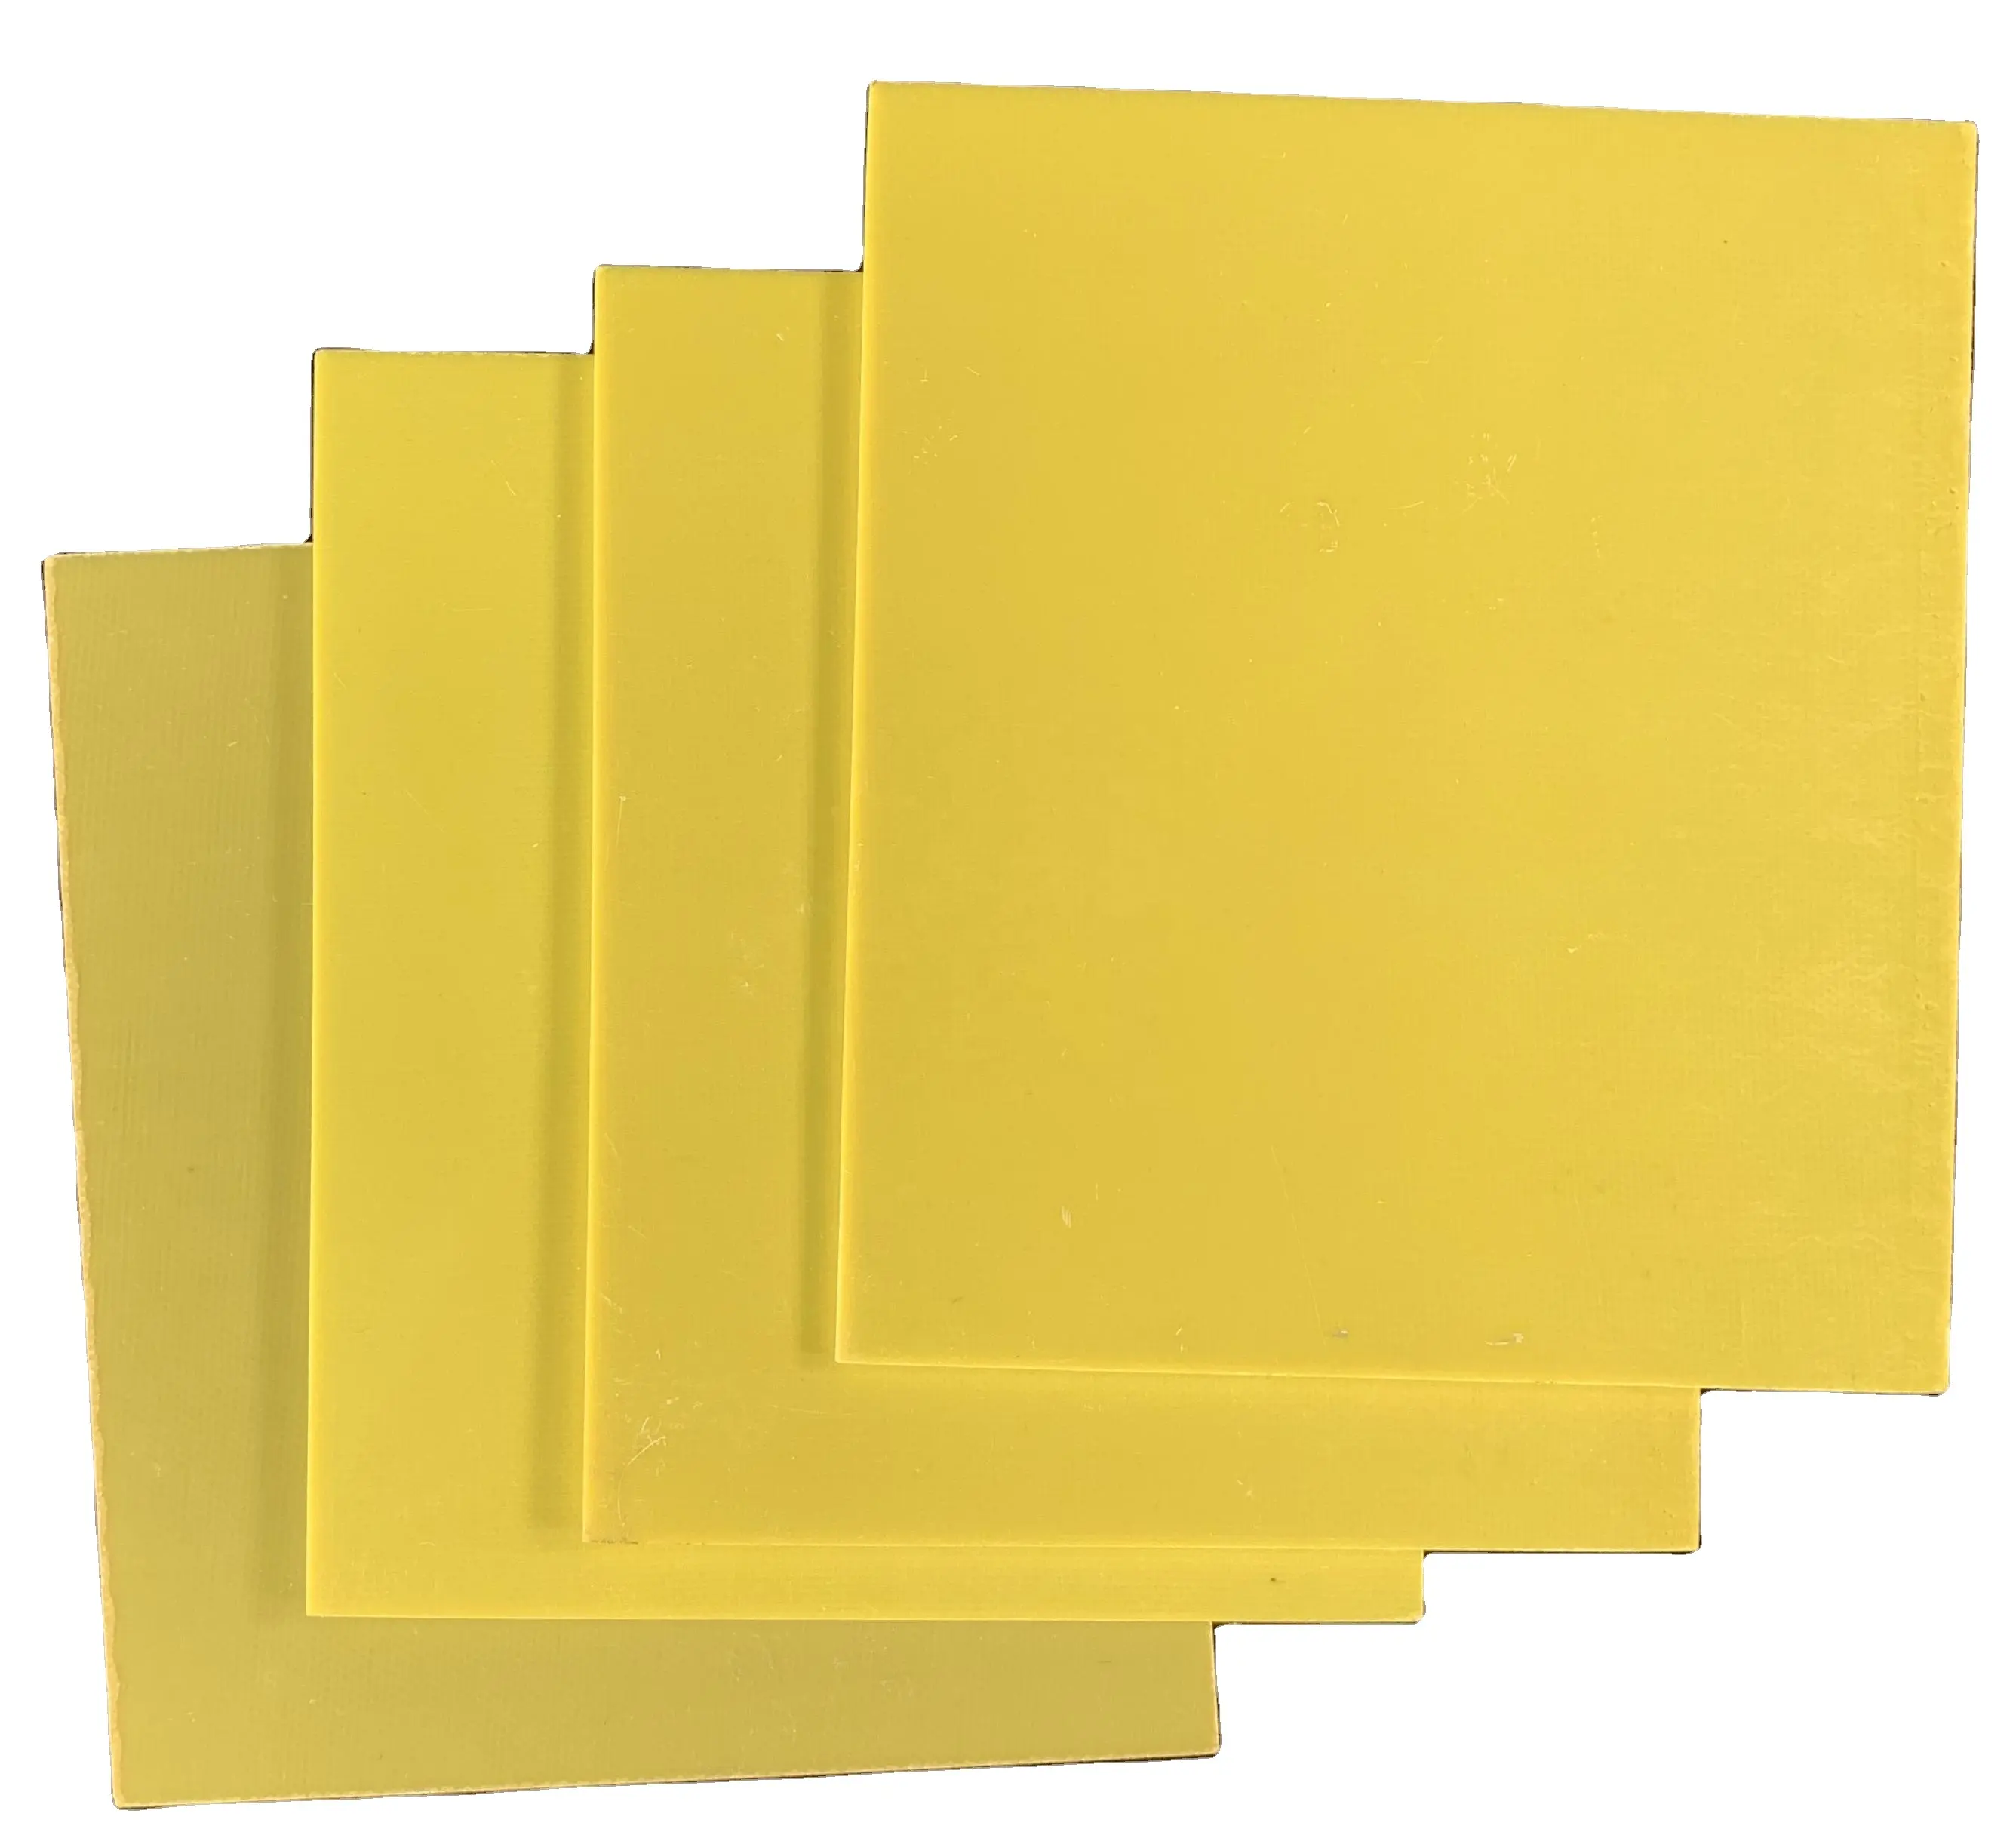 صفائح إيبوكسي صفراء للبيع من المصنع للمحركات المتحولة